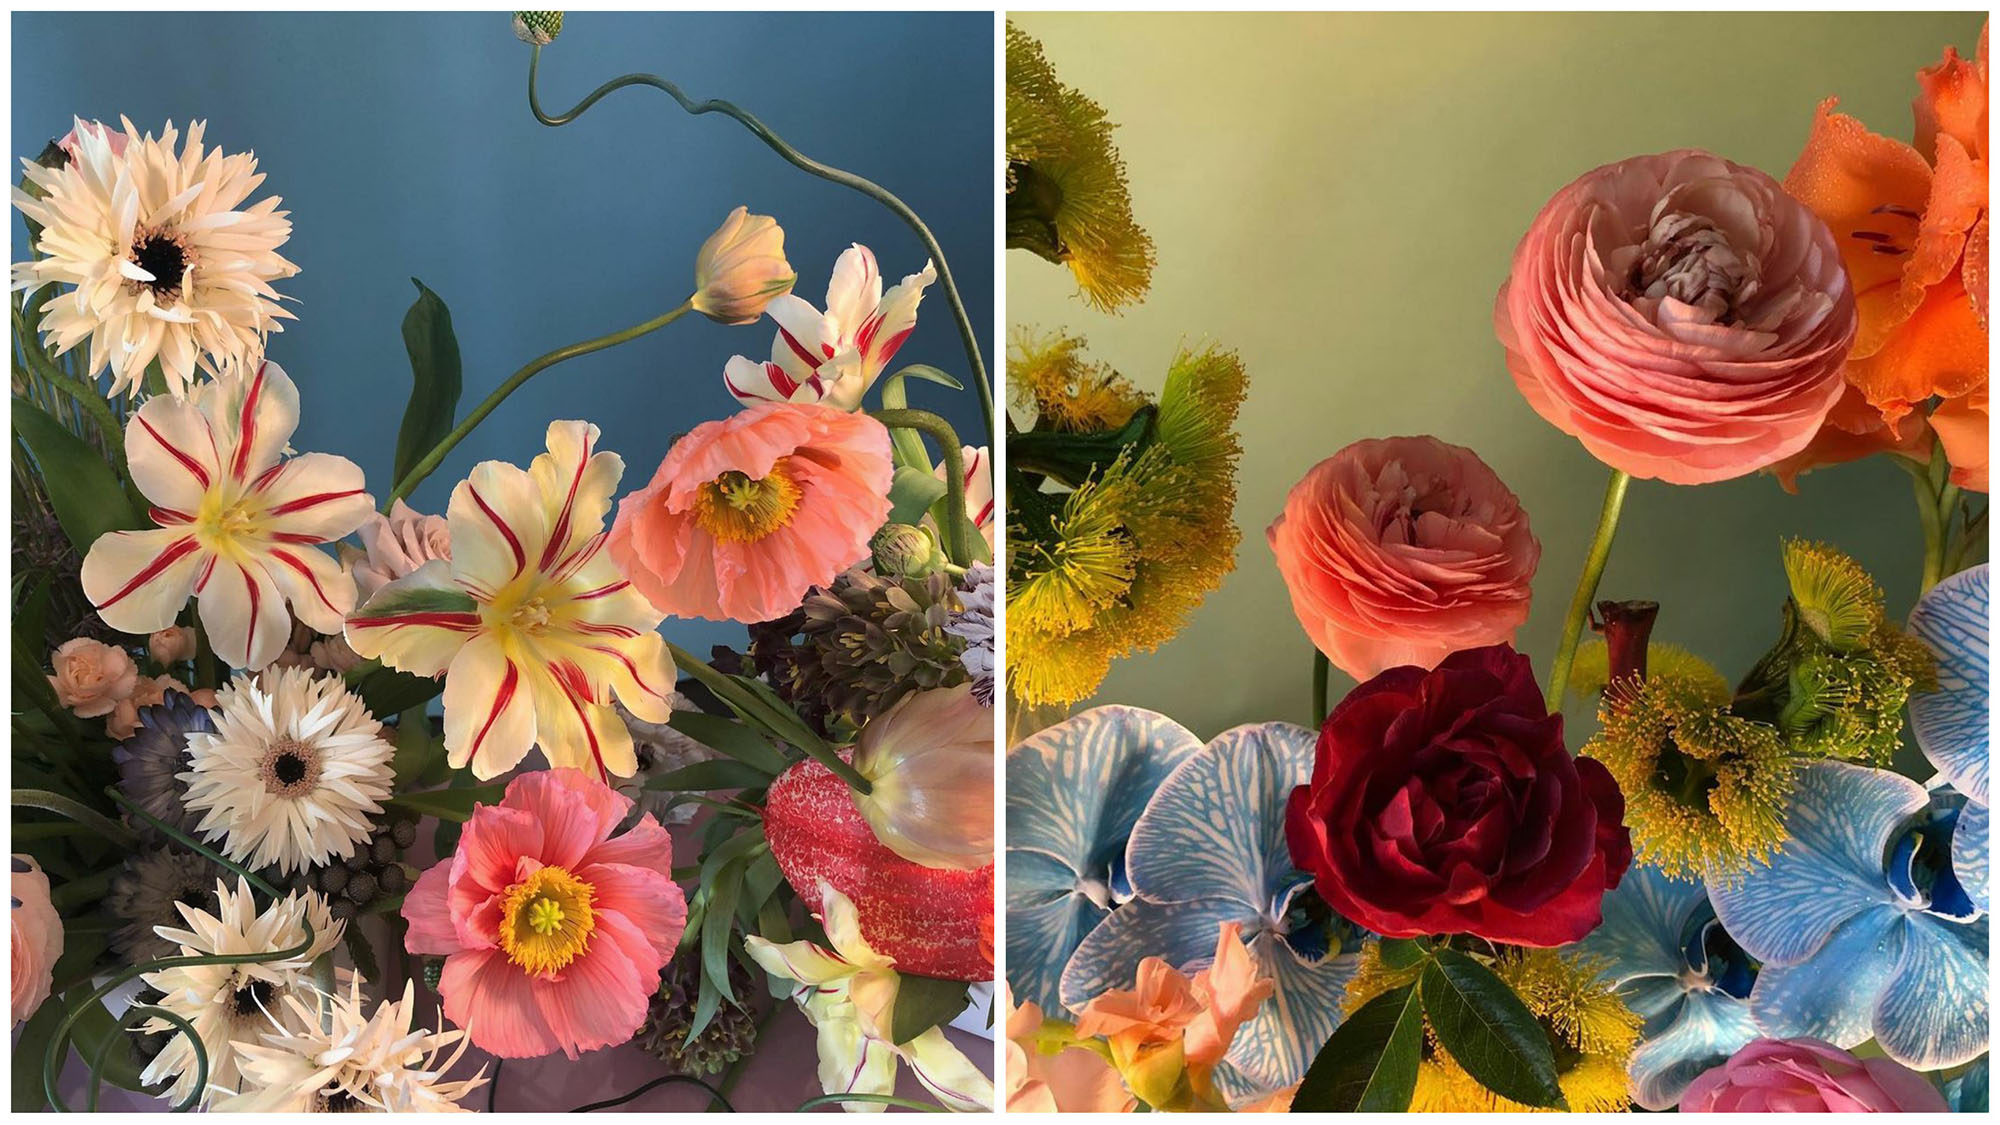 Tài khoản Instagram @doan_ly cho người yêu thích nghệ thuật cắm hoa